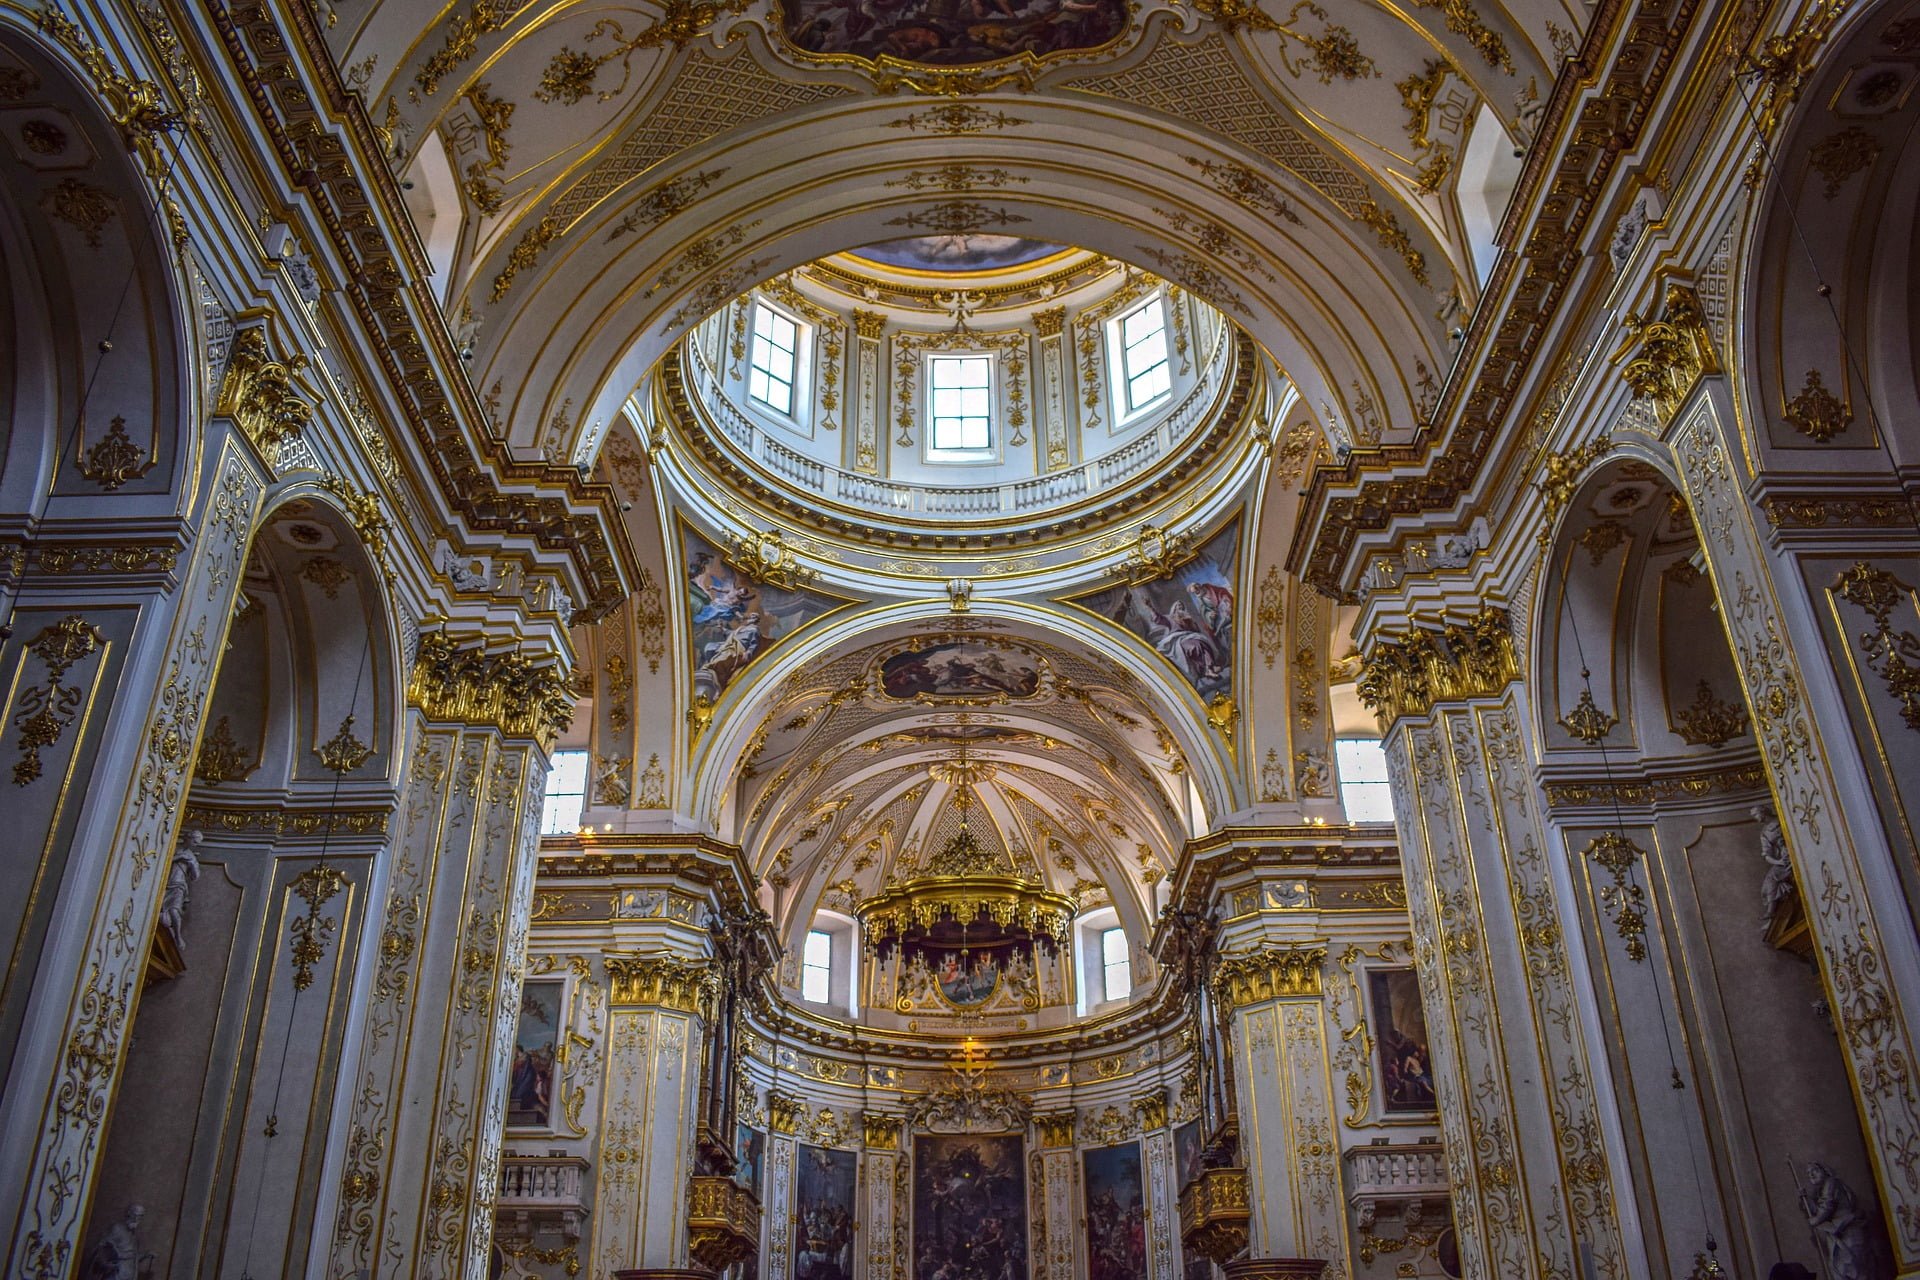 Wnętrze Katedry Świętego Aleksandra (Duomo di Bergamo) wspaniale dekorowane złotem i pięknymi rzeźbami